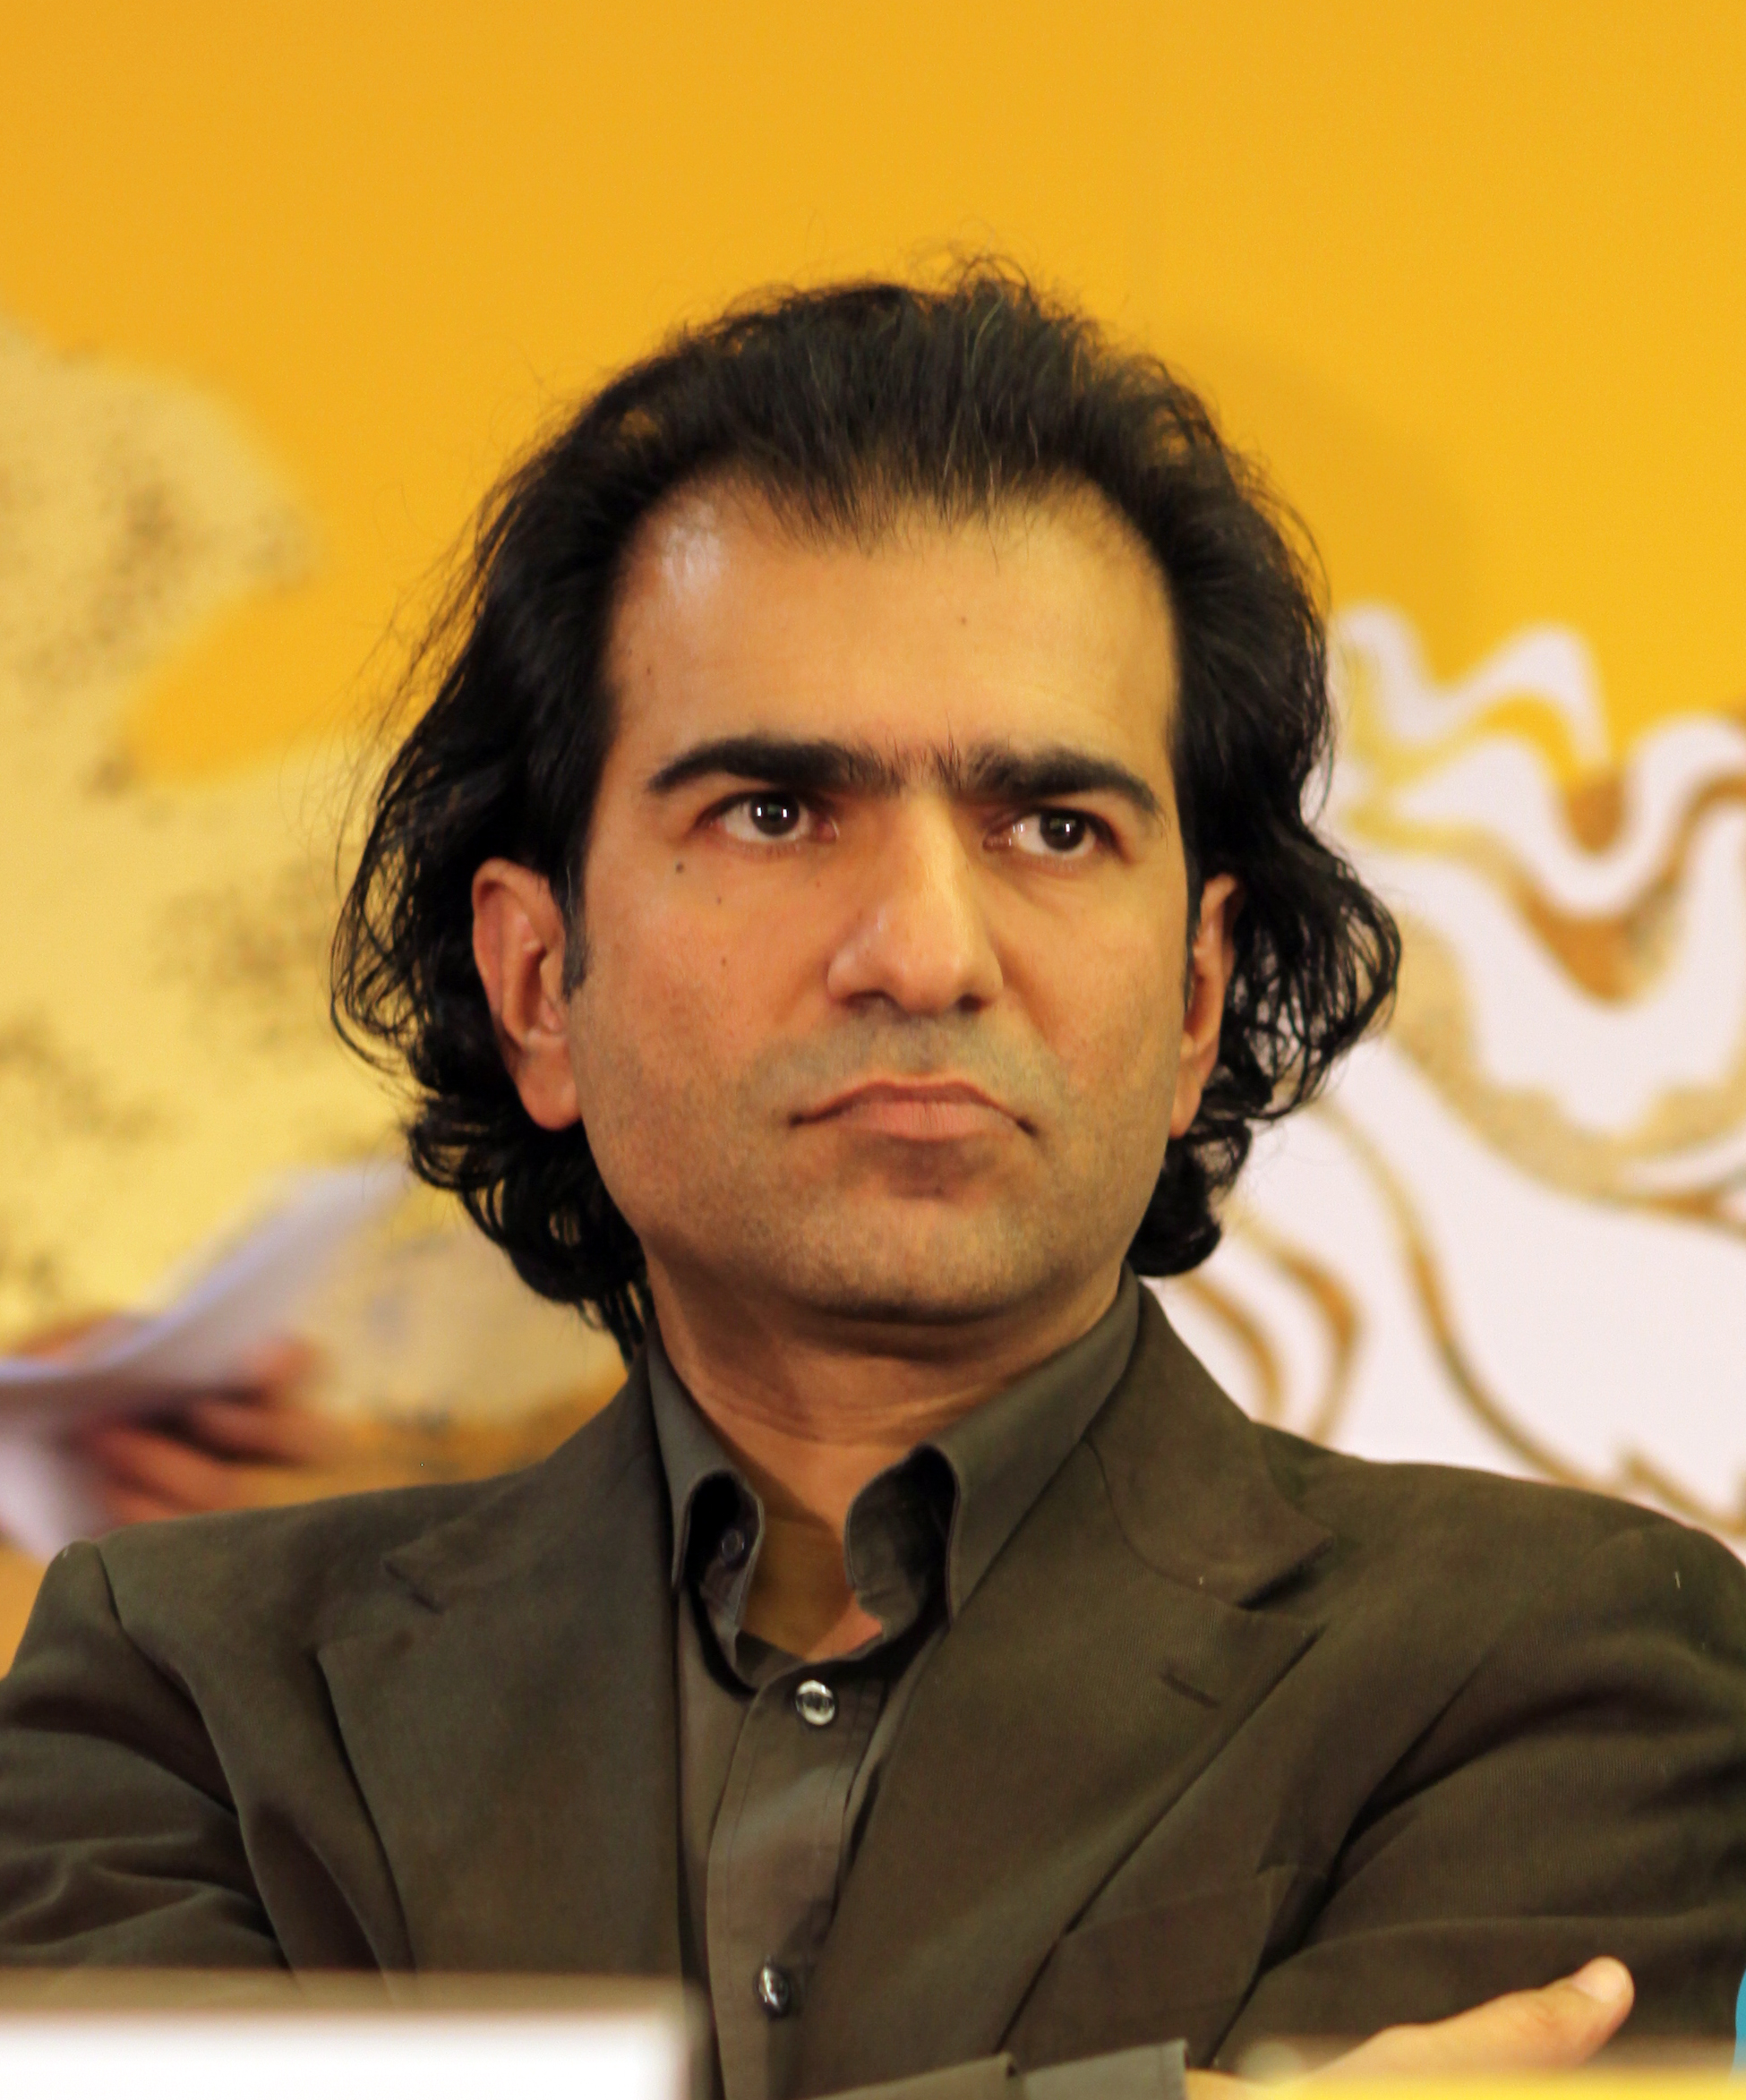 Fardin Saheb-Zamani